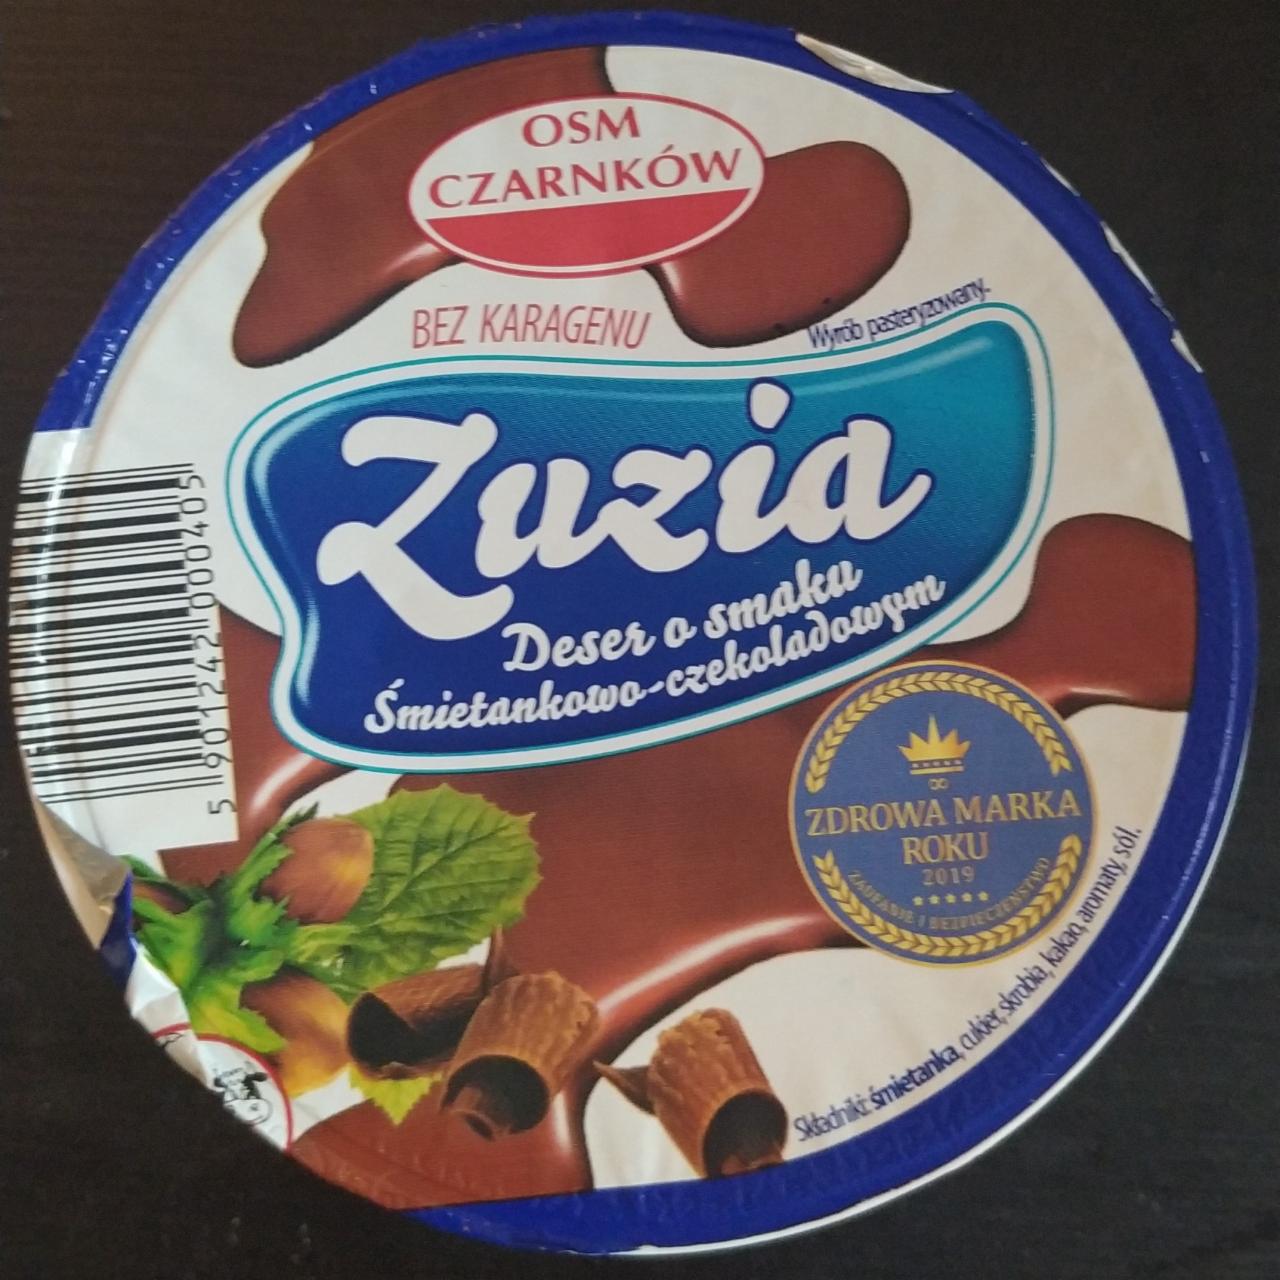 Zdjęcia - Zuzia deser o smaku śmietankowo czekoladowym OSM Czarnków